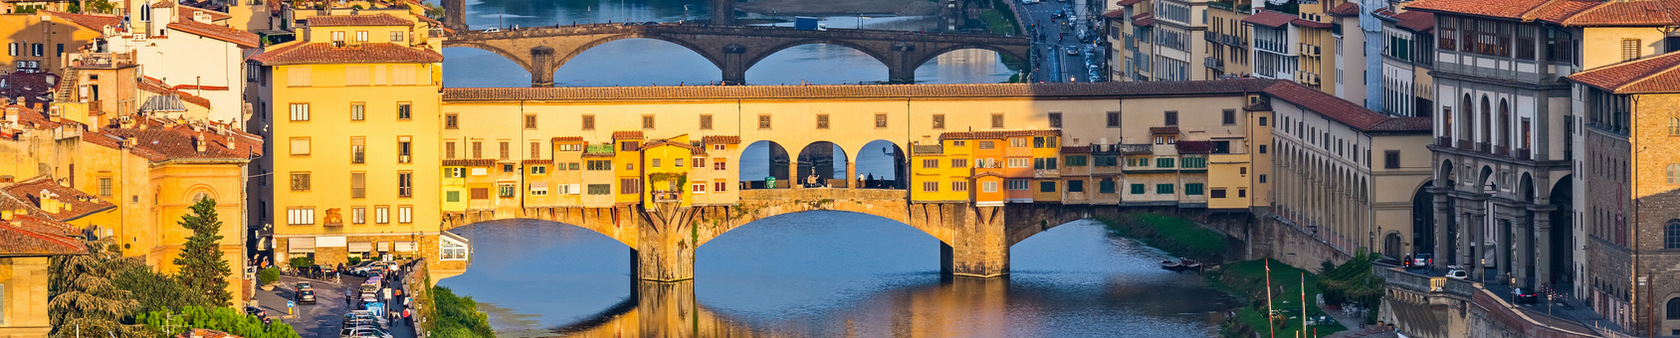 poznawanie języka włoskiego we Włoszech - Florencja